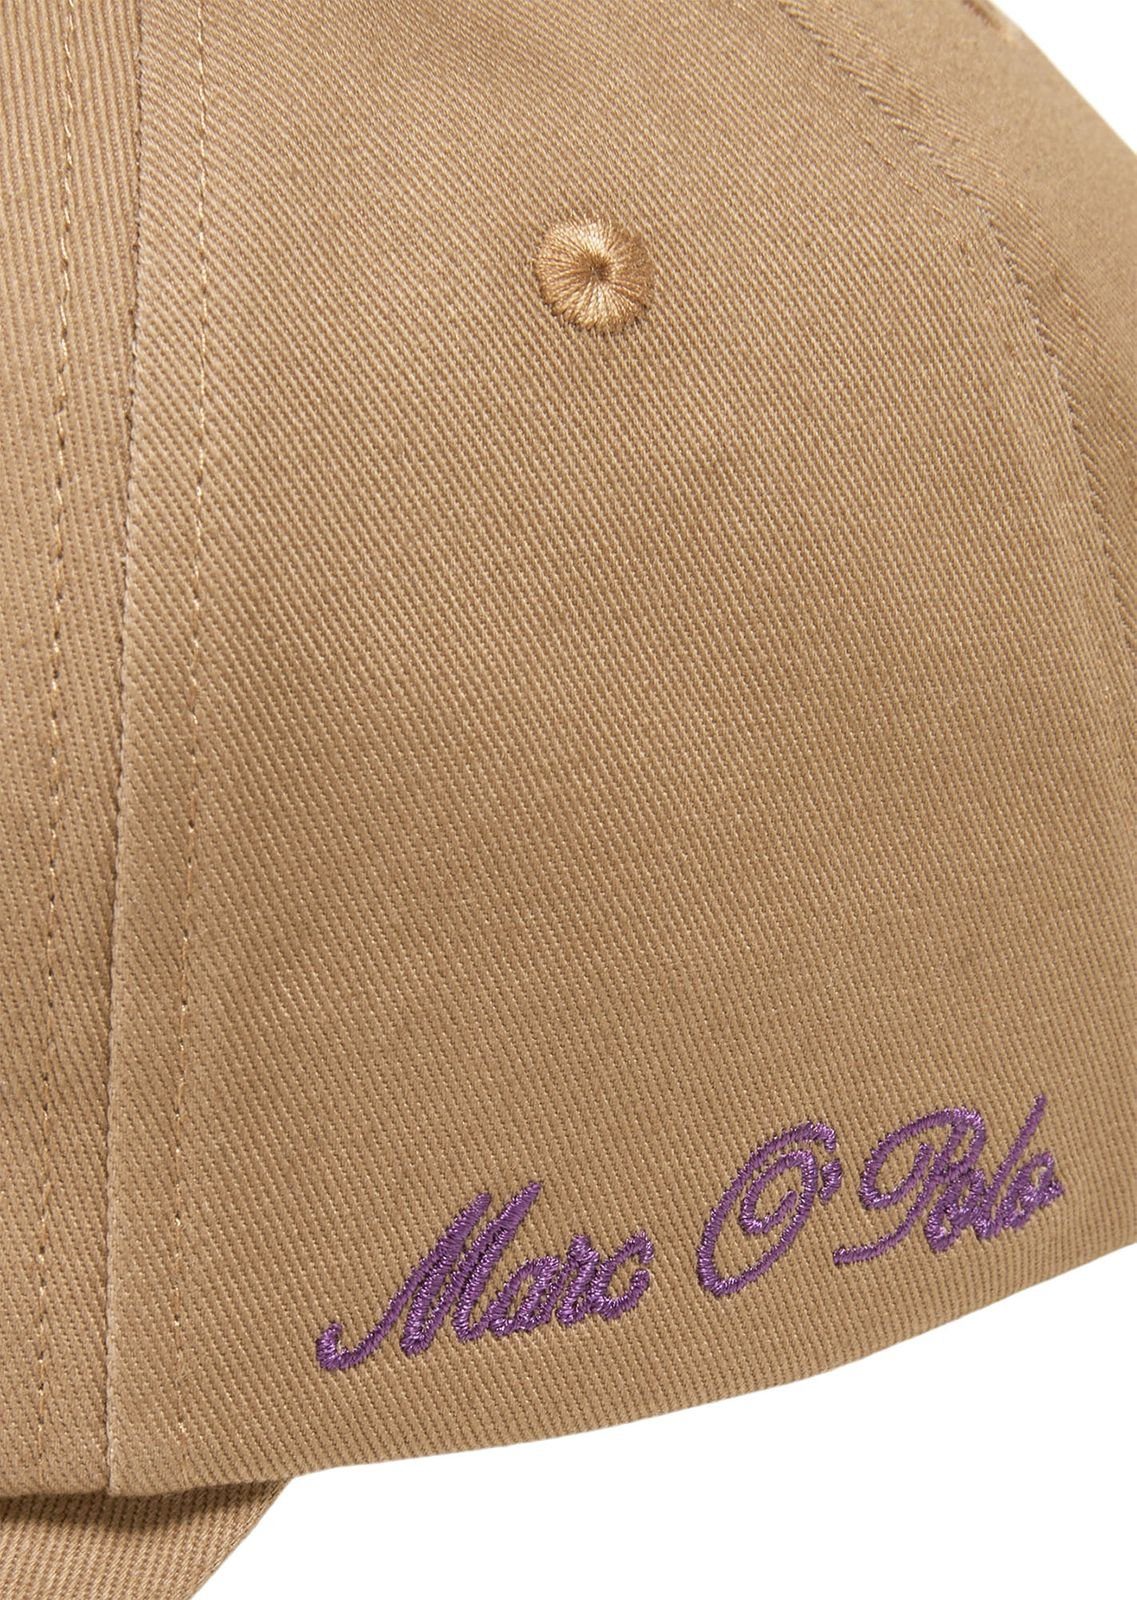 Cap O'Polo Embroidery Casabella Brown Baseball Marc